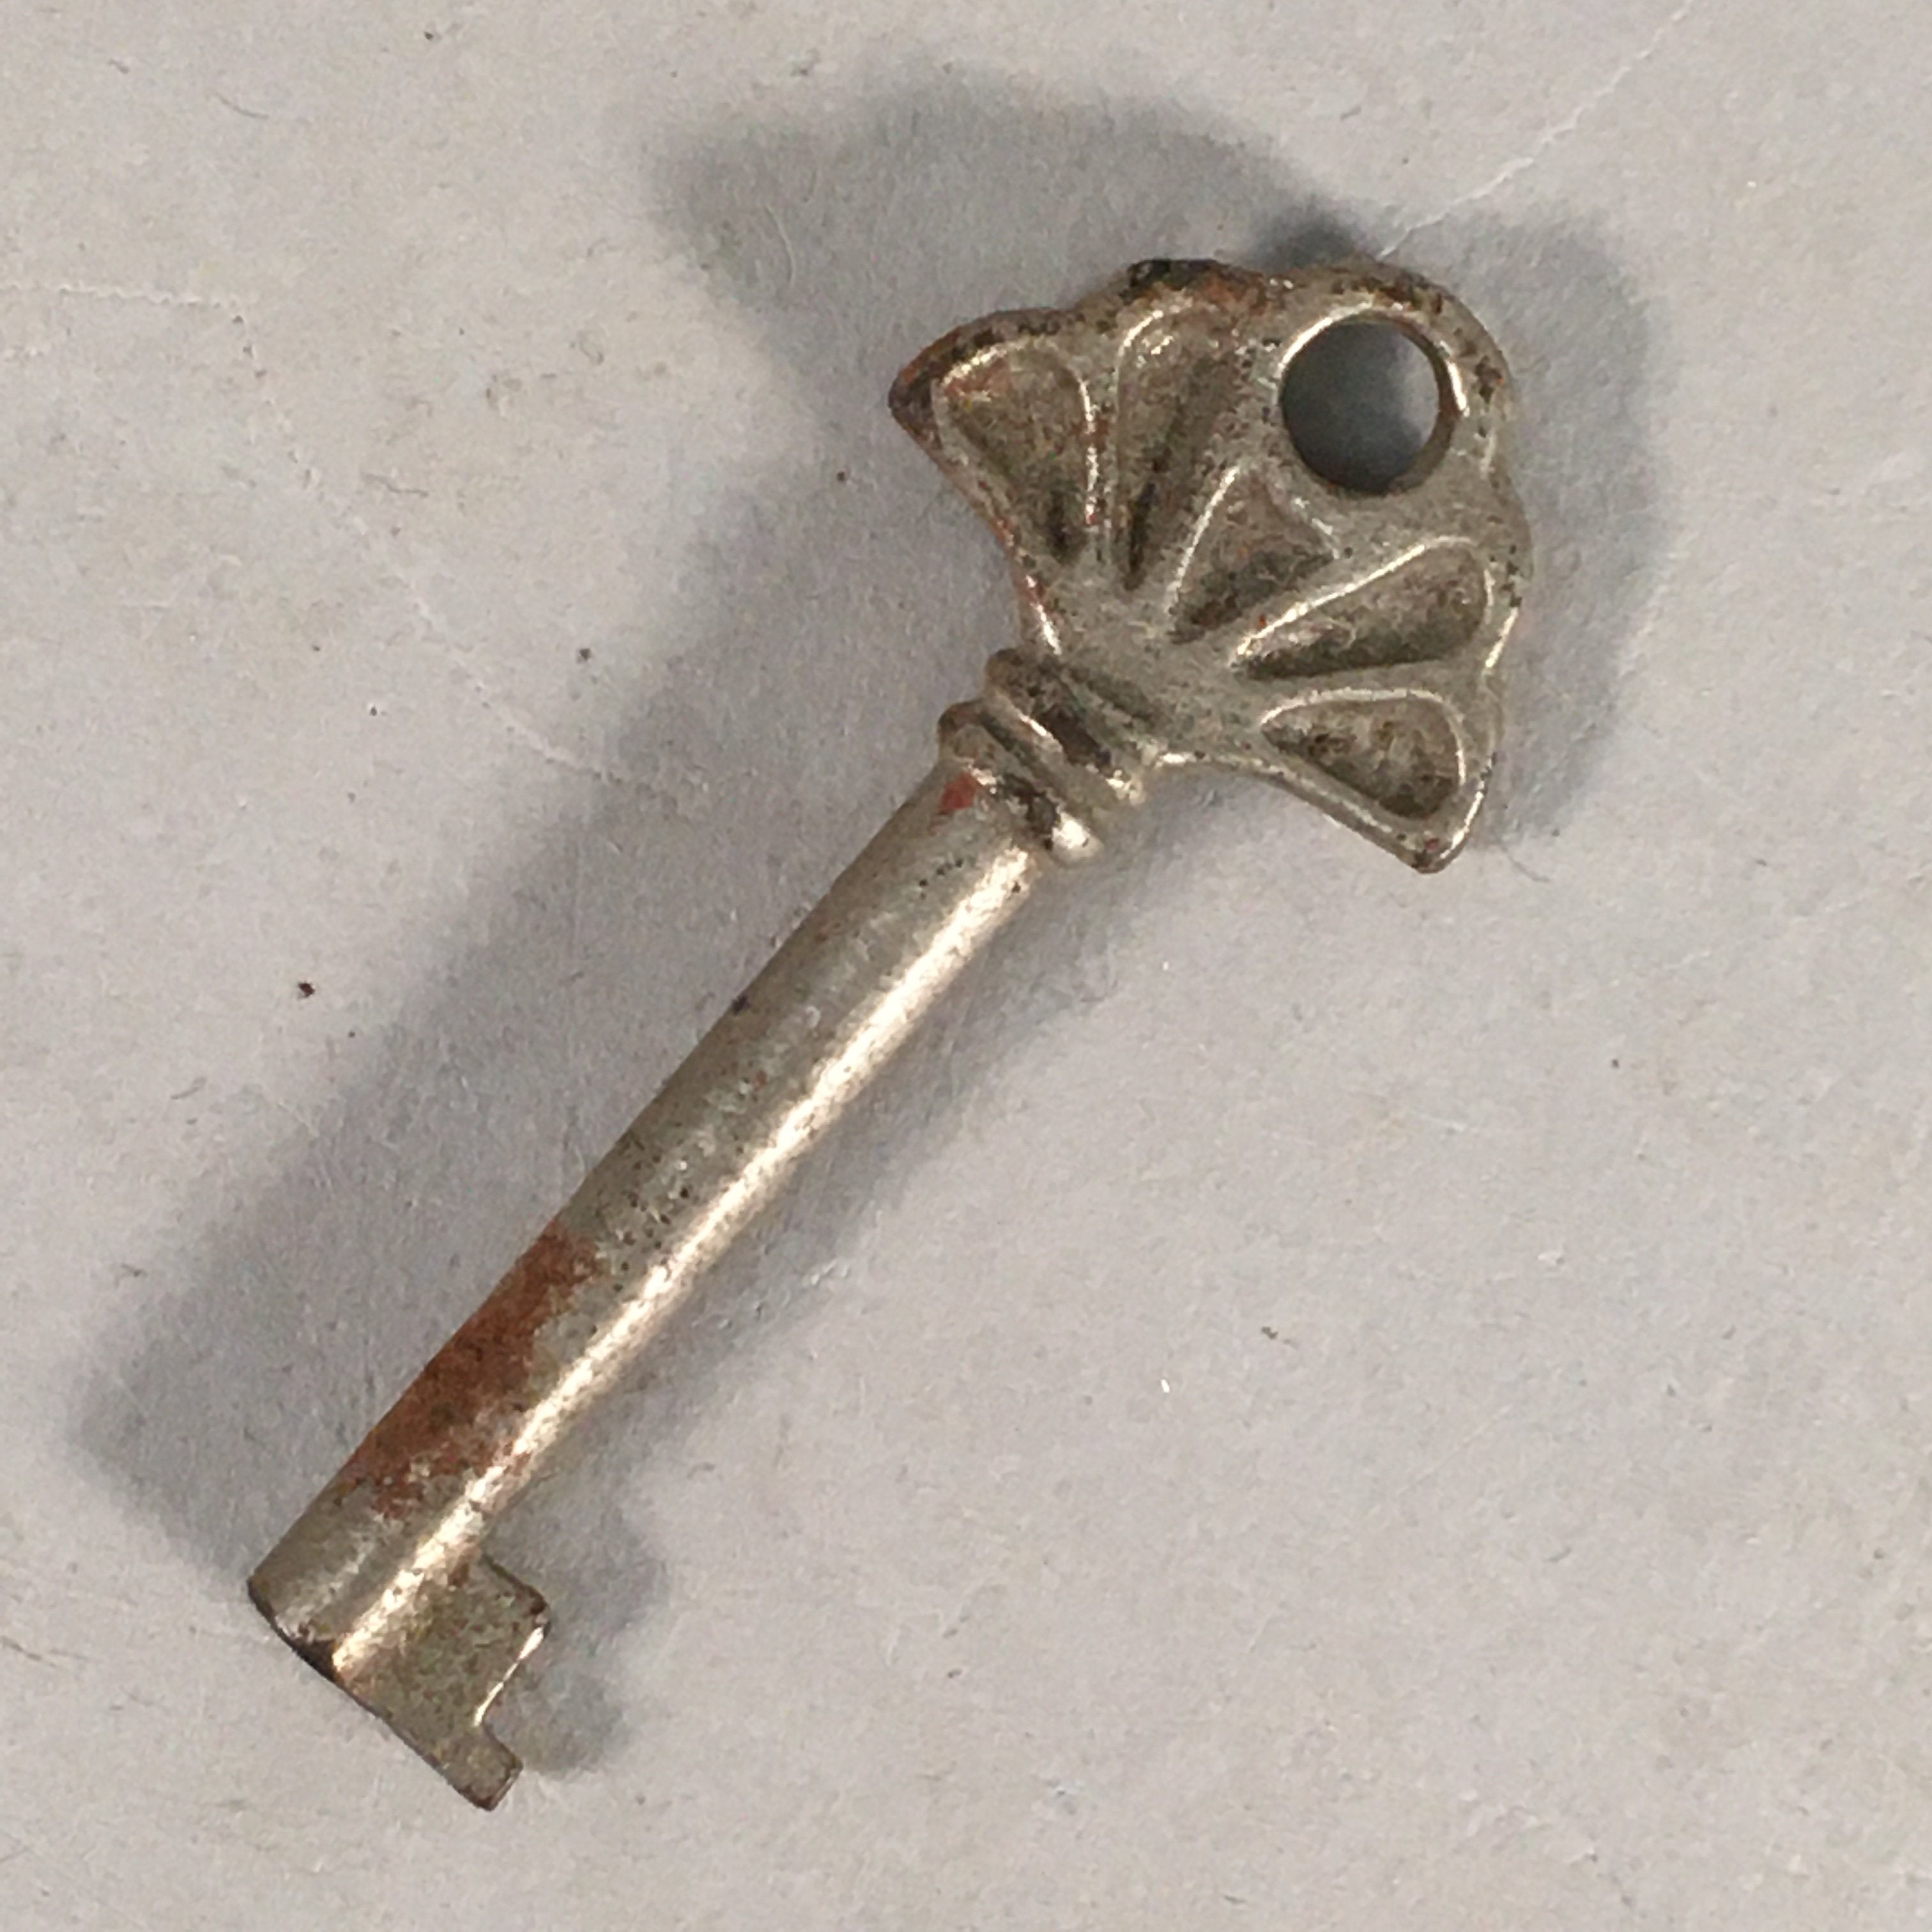 Japanese Metal Key Vtg C1930 Shell Hand-Fan Silver JK27